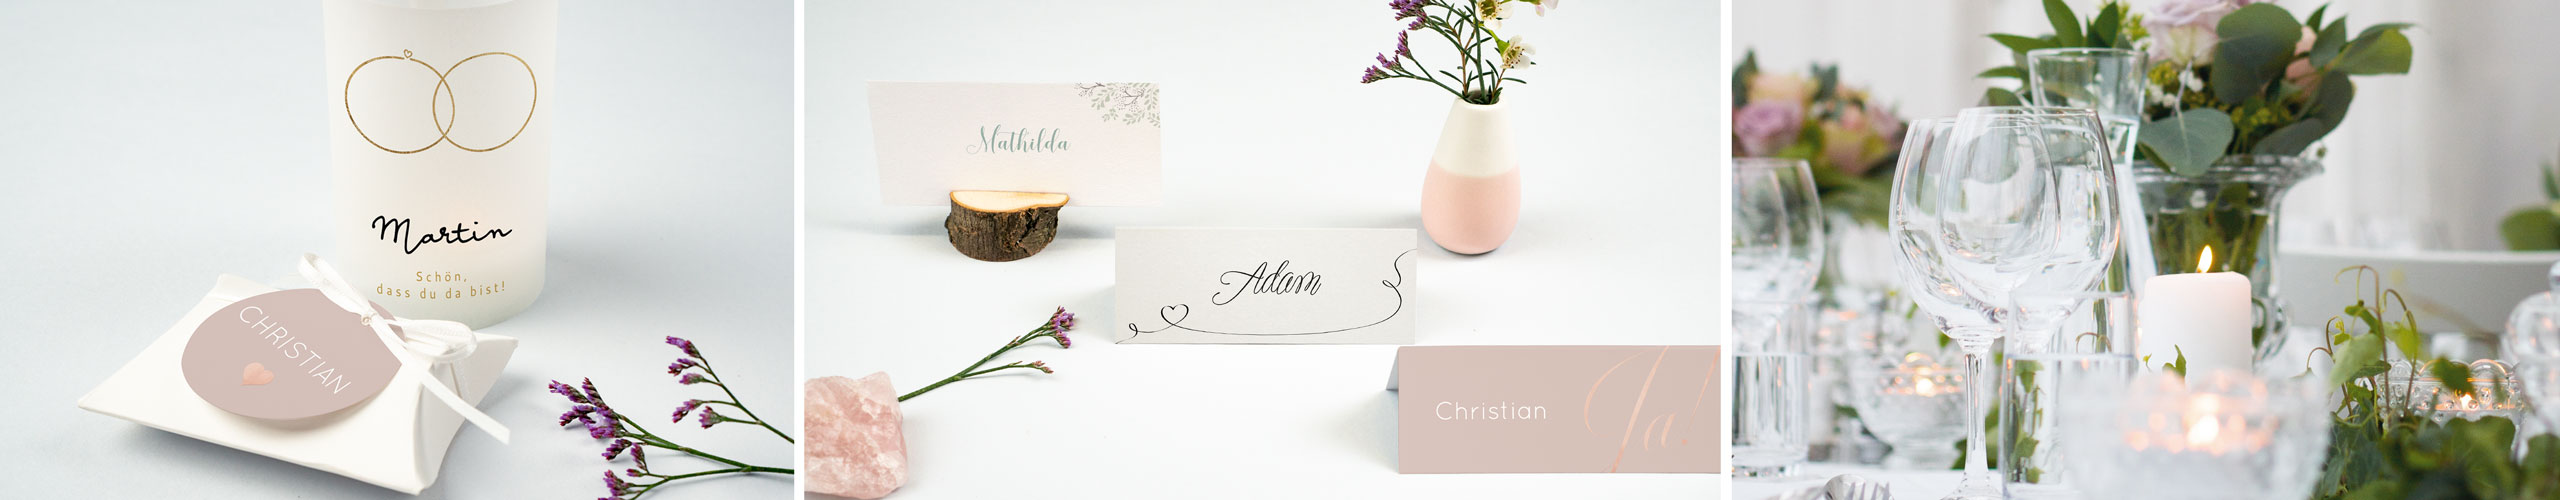 Tischkärtchen für die Hochzeitstafel in verschiedenen Designs